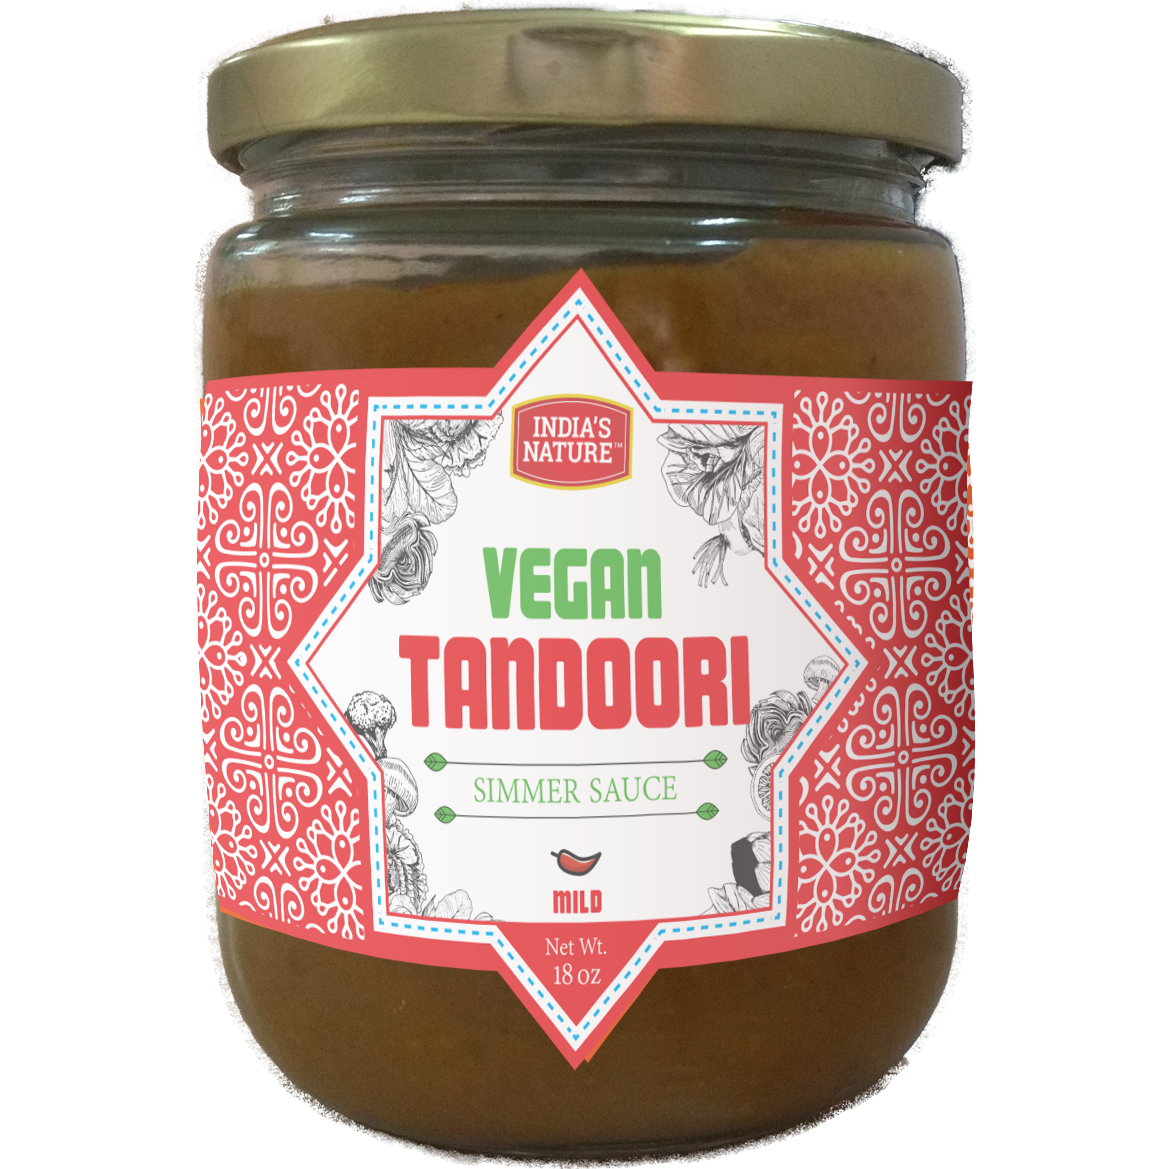 Case of 12 - India's Nature Vegan Tandoori Simmer Sauce - 18 Oz (510 Gm)